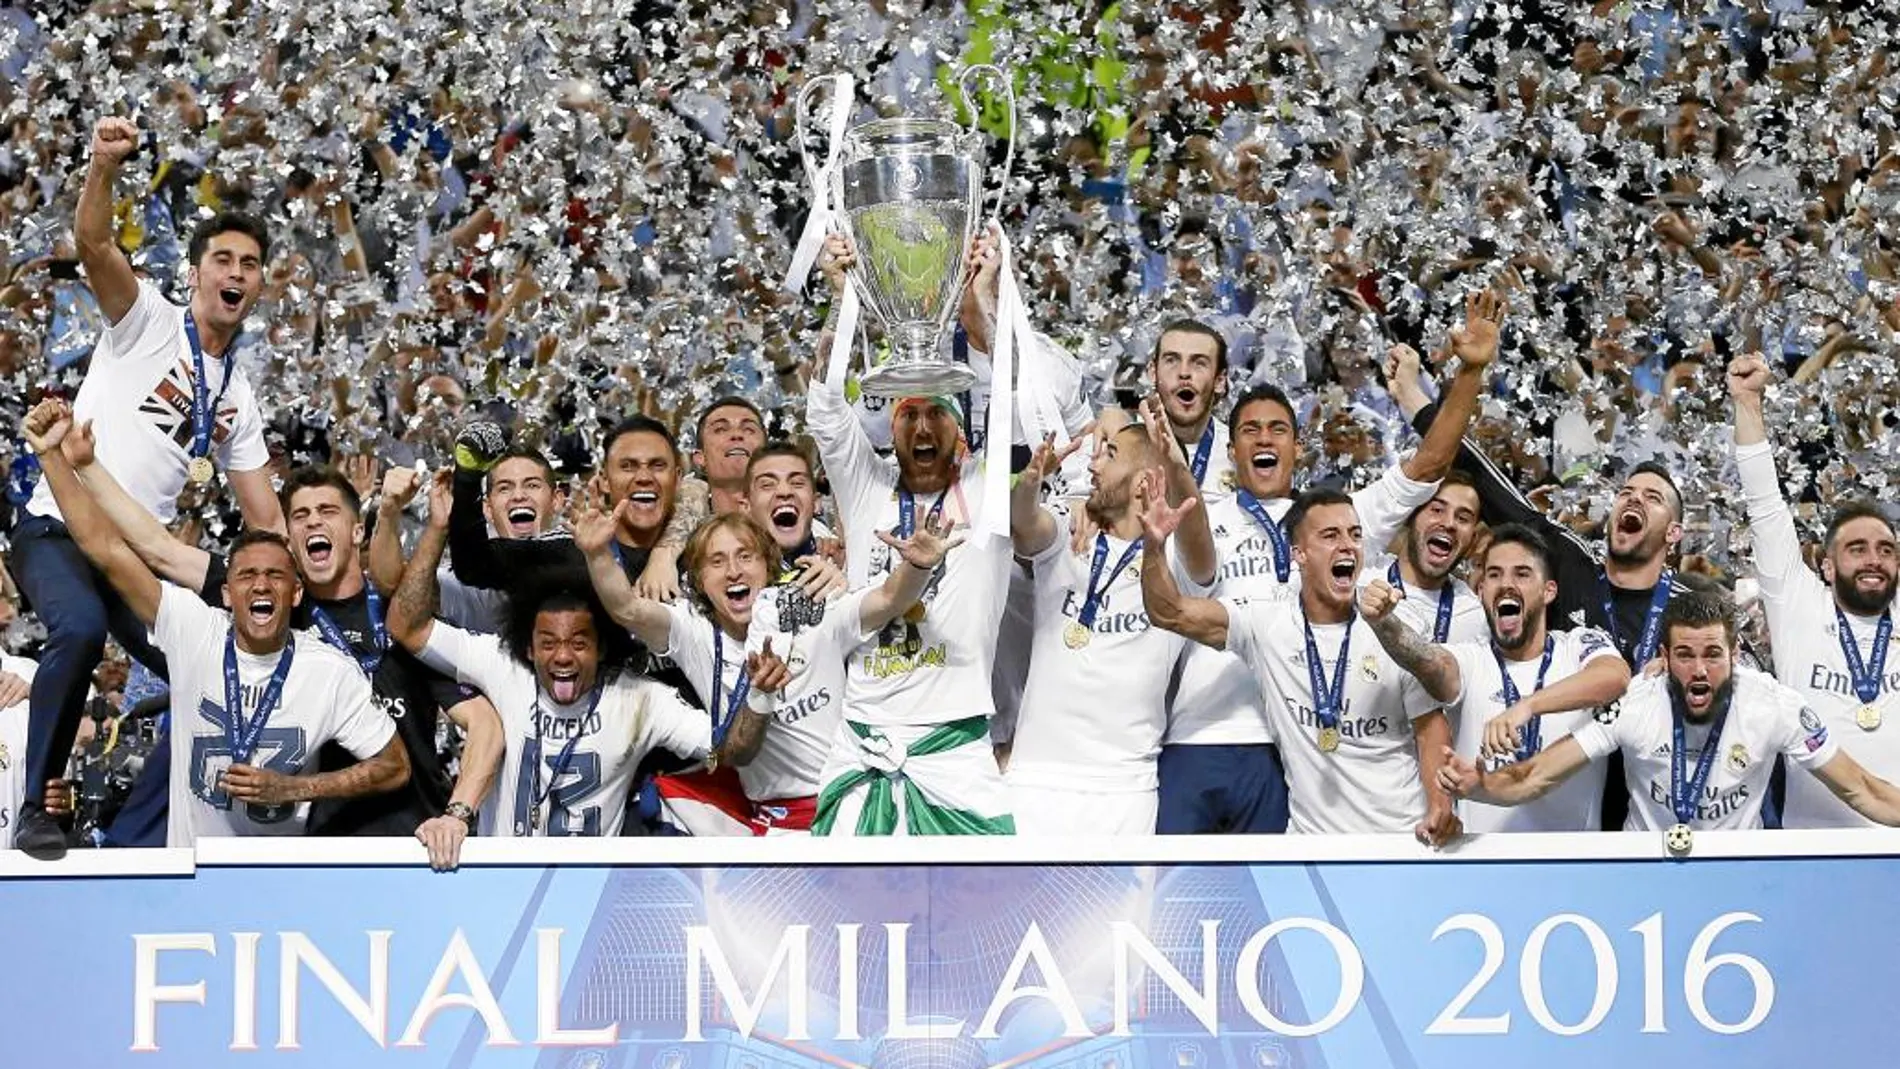 Los jugadores del Real Madrid celebran la Liga de Campeones del pasado año tras ganar en la tanda de penaltis al Atlético de Madrid en la final jugada en el estadio de San Siro